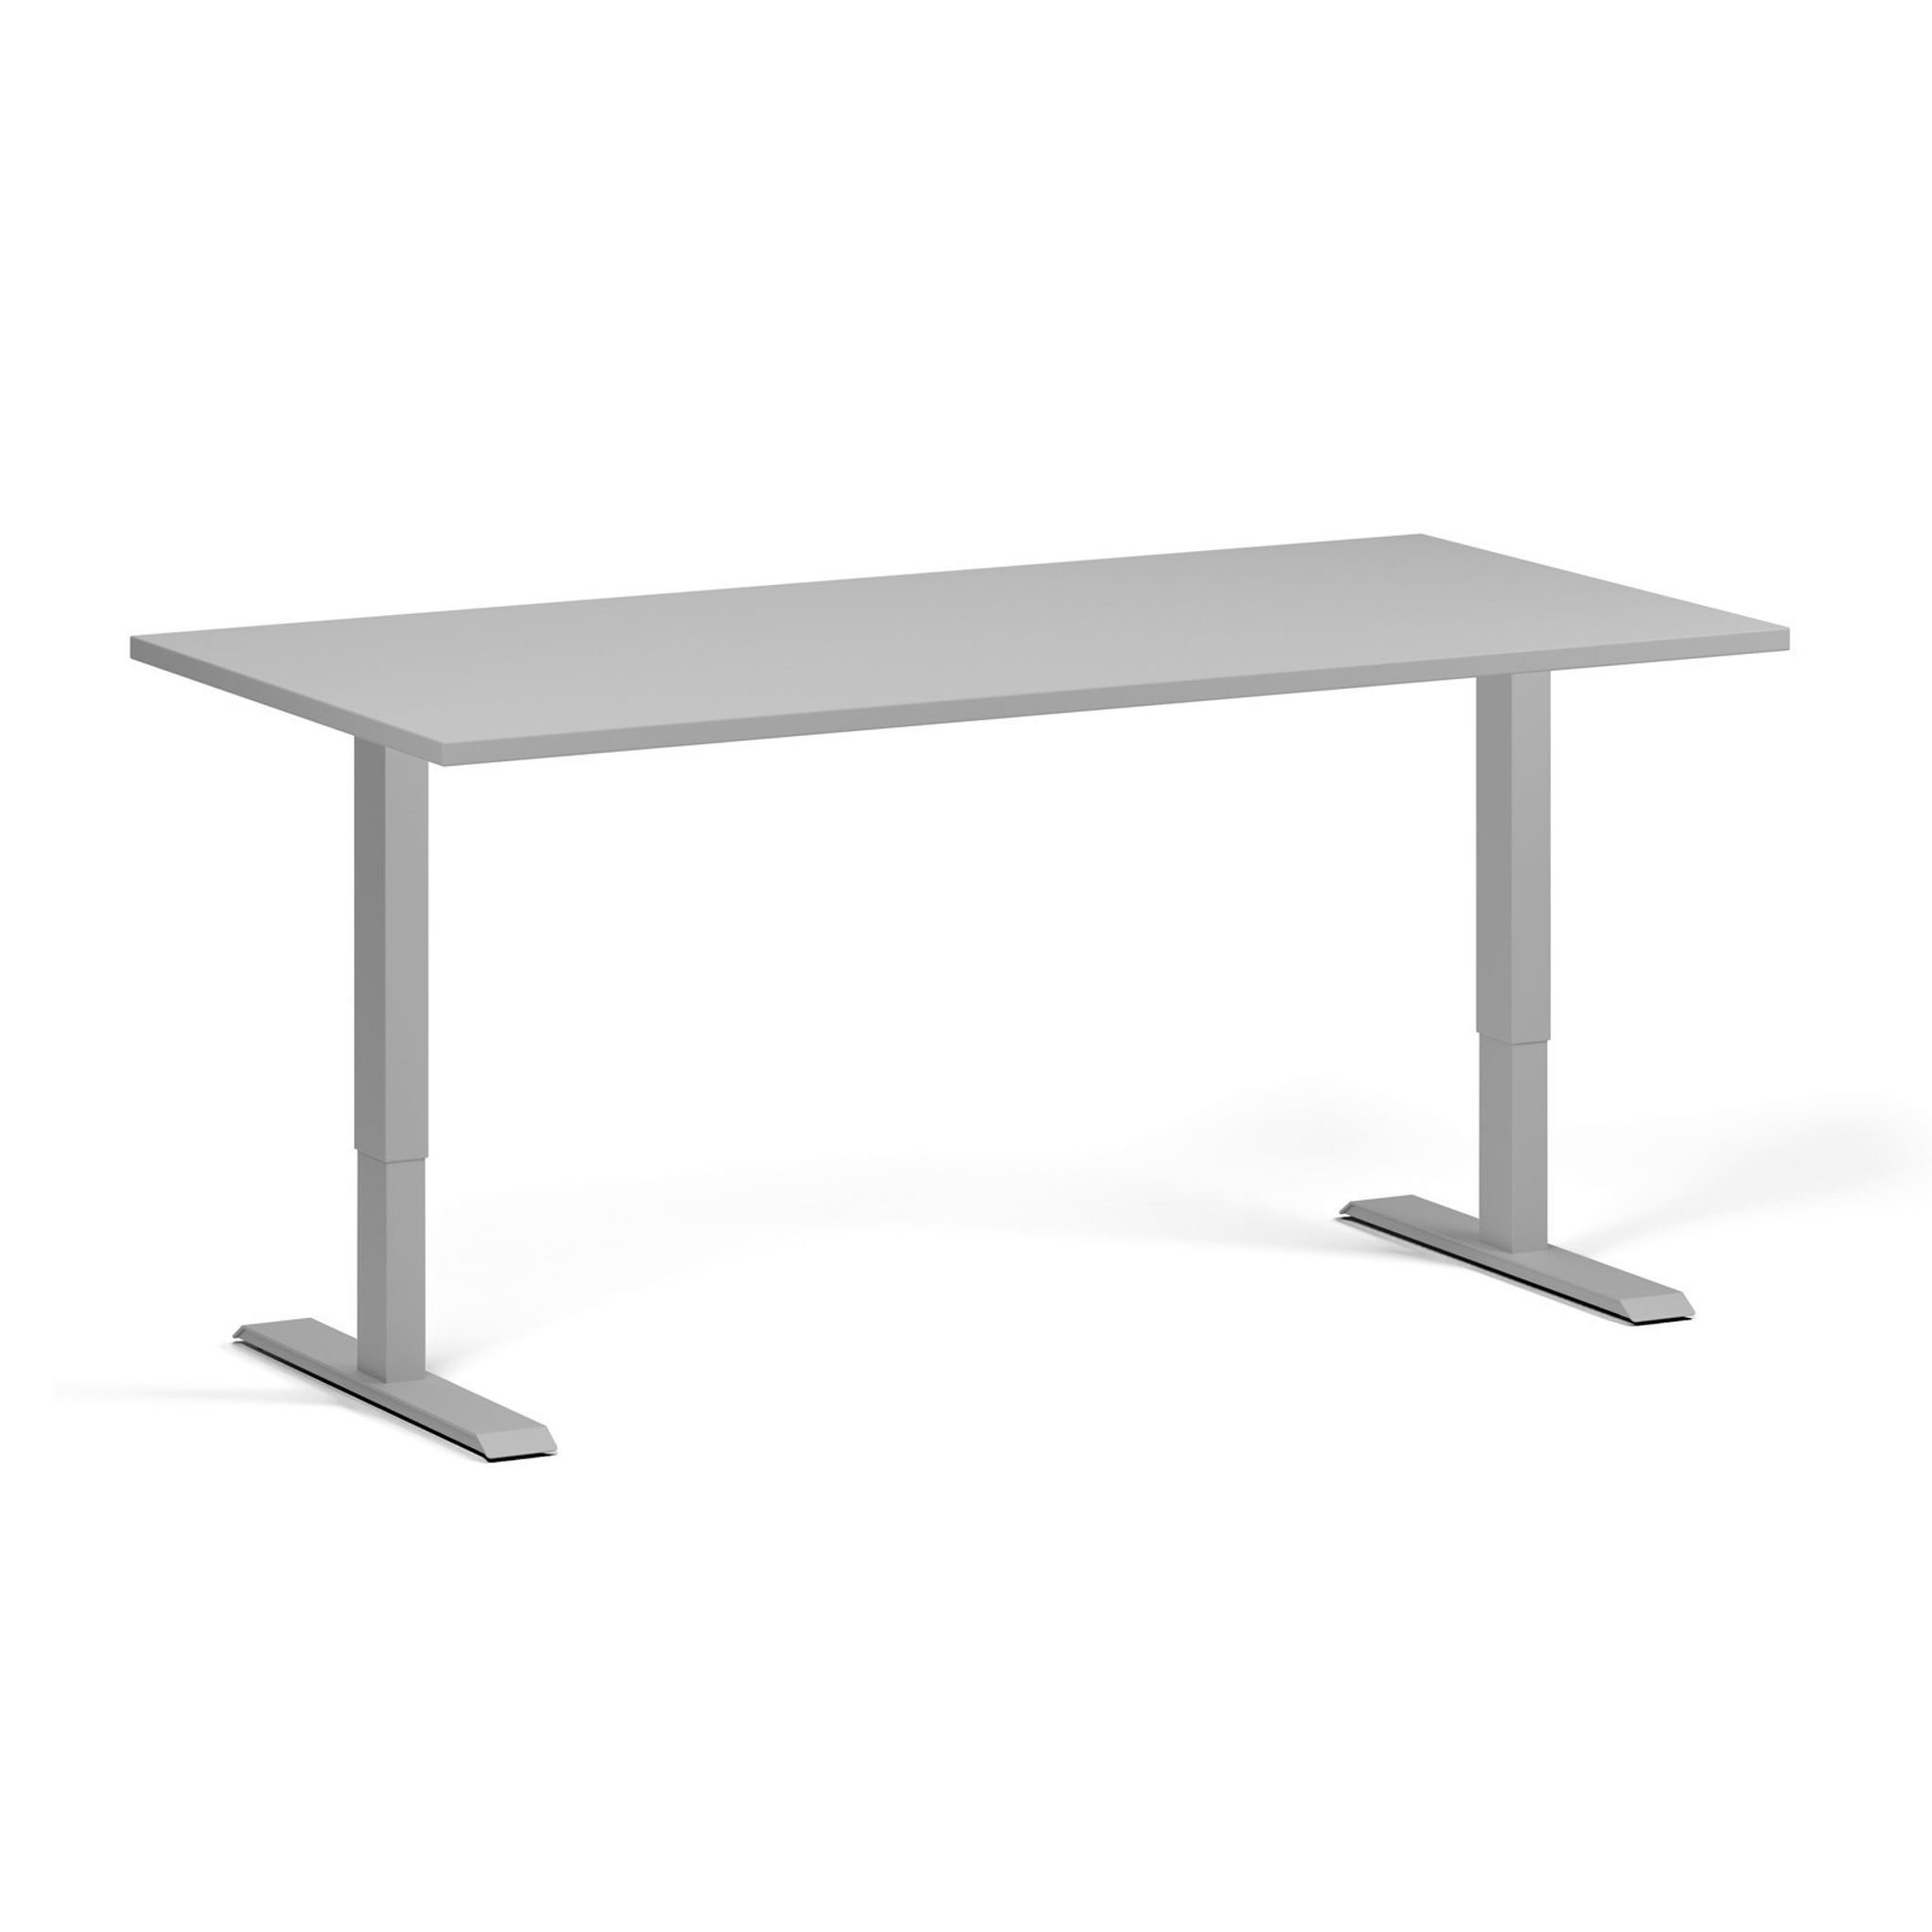 Výškově nastavitelný stůl, 1 motor, 745 - 1235 mm, deska 1600 x 800 mm, šedá podnožm, šedá